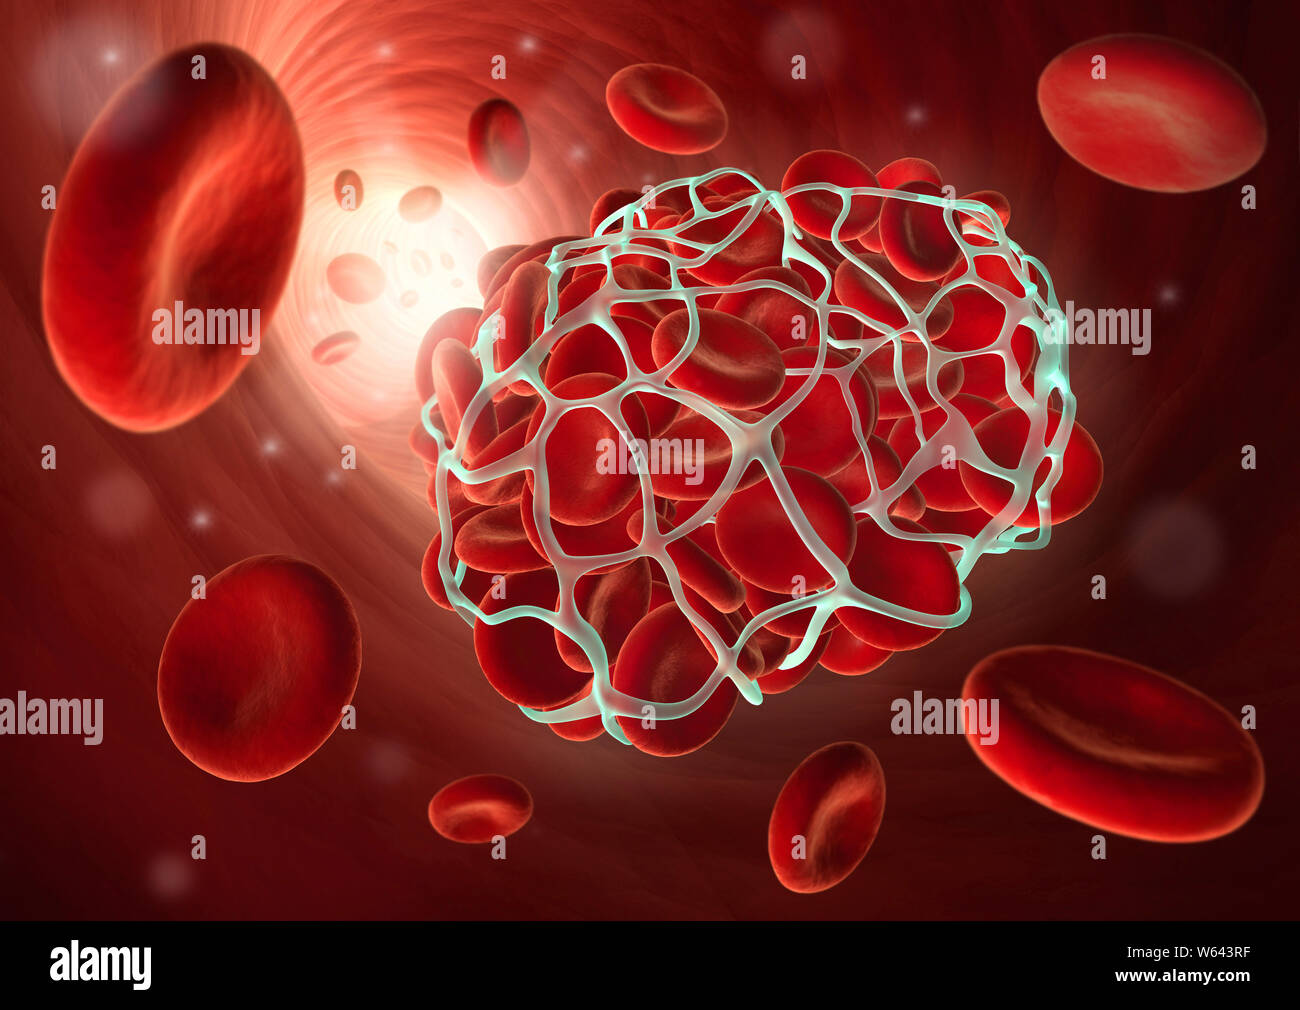 Illustration médicale d'un caillot sanguin ou thrombus - coagulation - illustratio 3D Banque D'Images